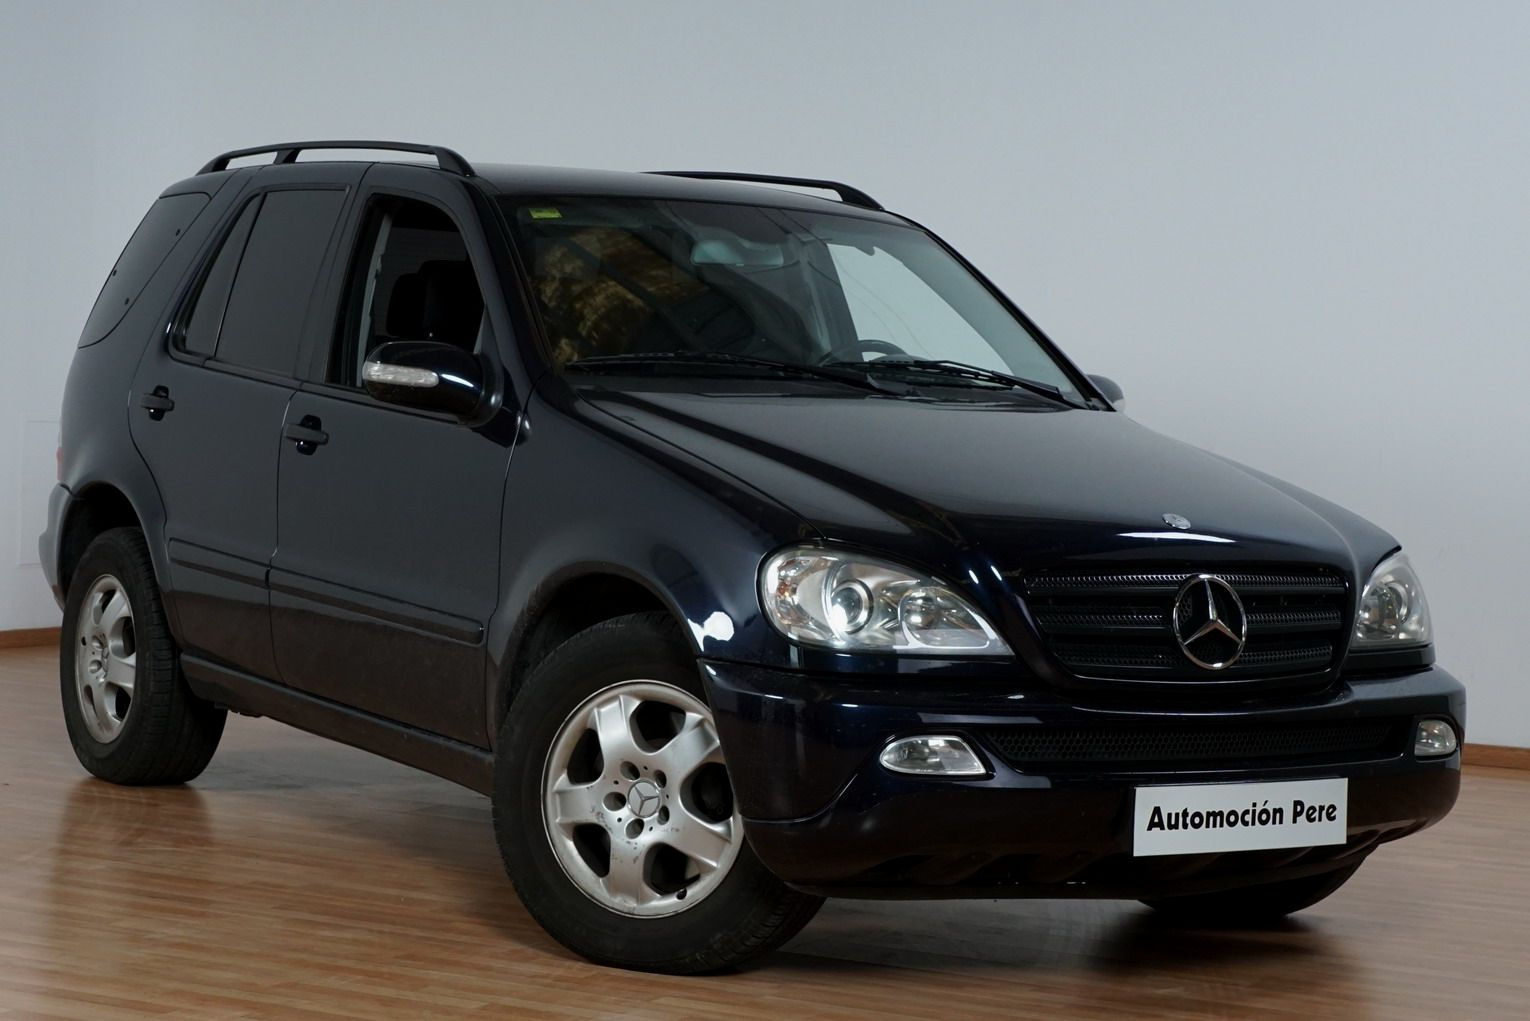 Decisión Inseguro Menagerry Nueva Recepción: Mercedes Benz ML 270 CDi Aut. "7 PLAZAS" | Automocio Pere